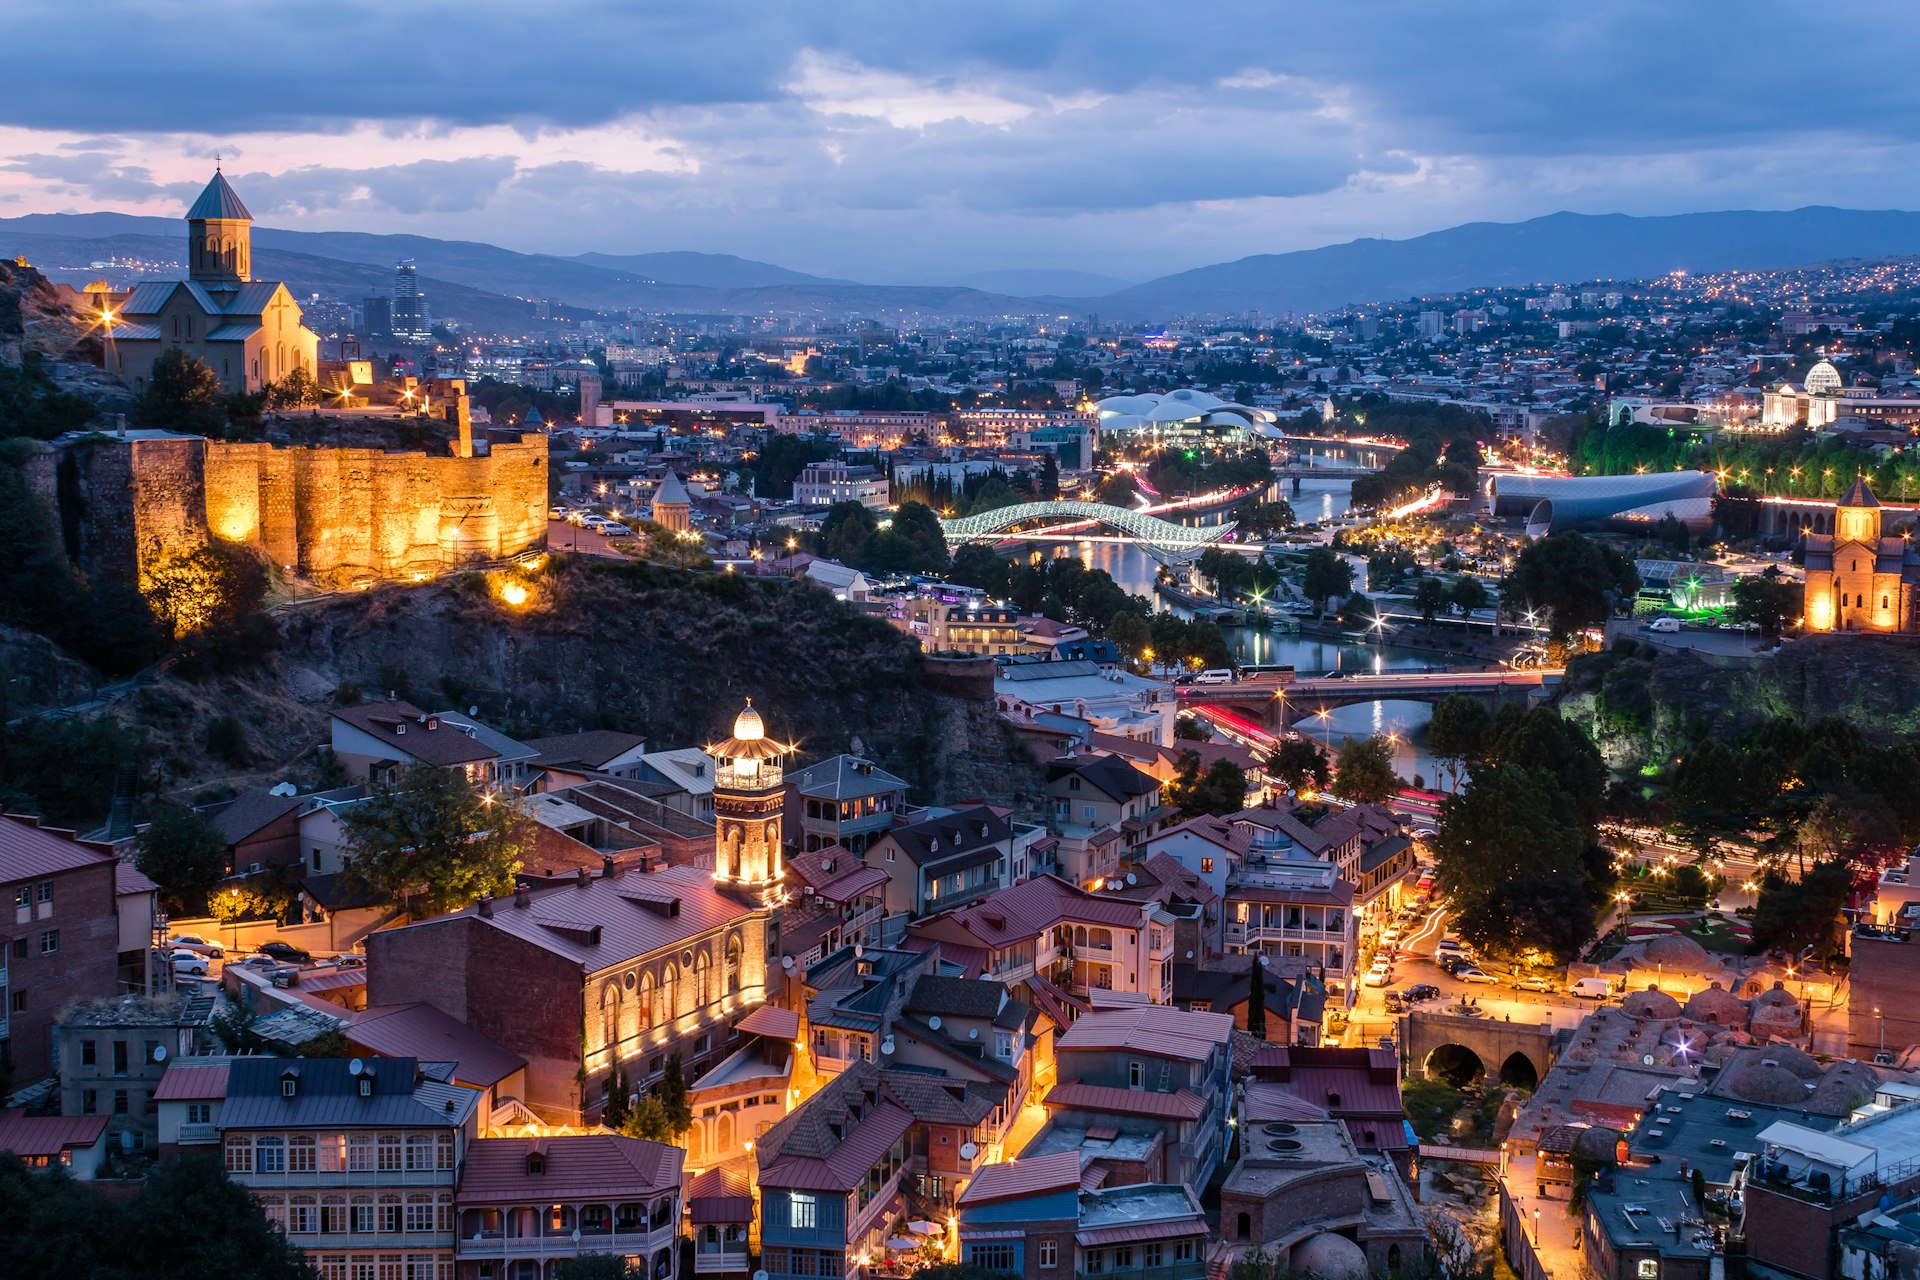 Features - Tbilisi (Republic of Georgia) at dusk